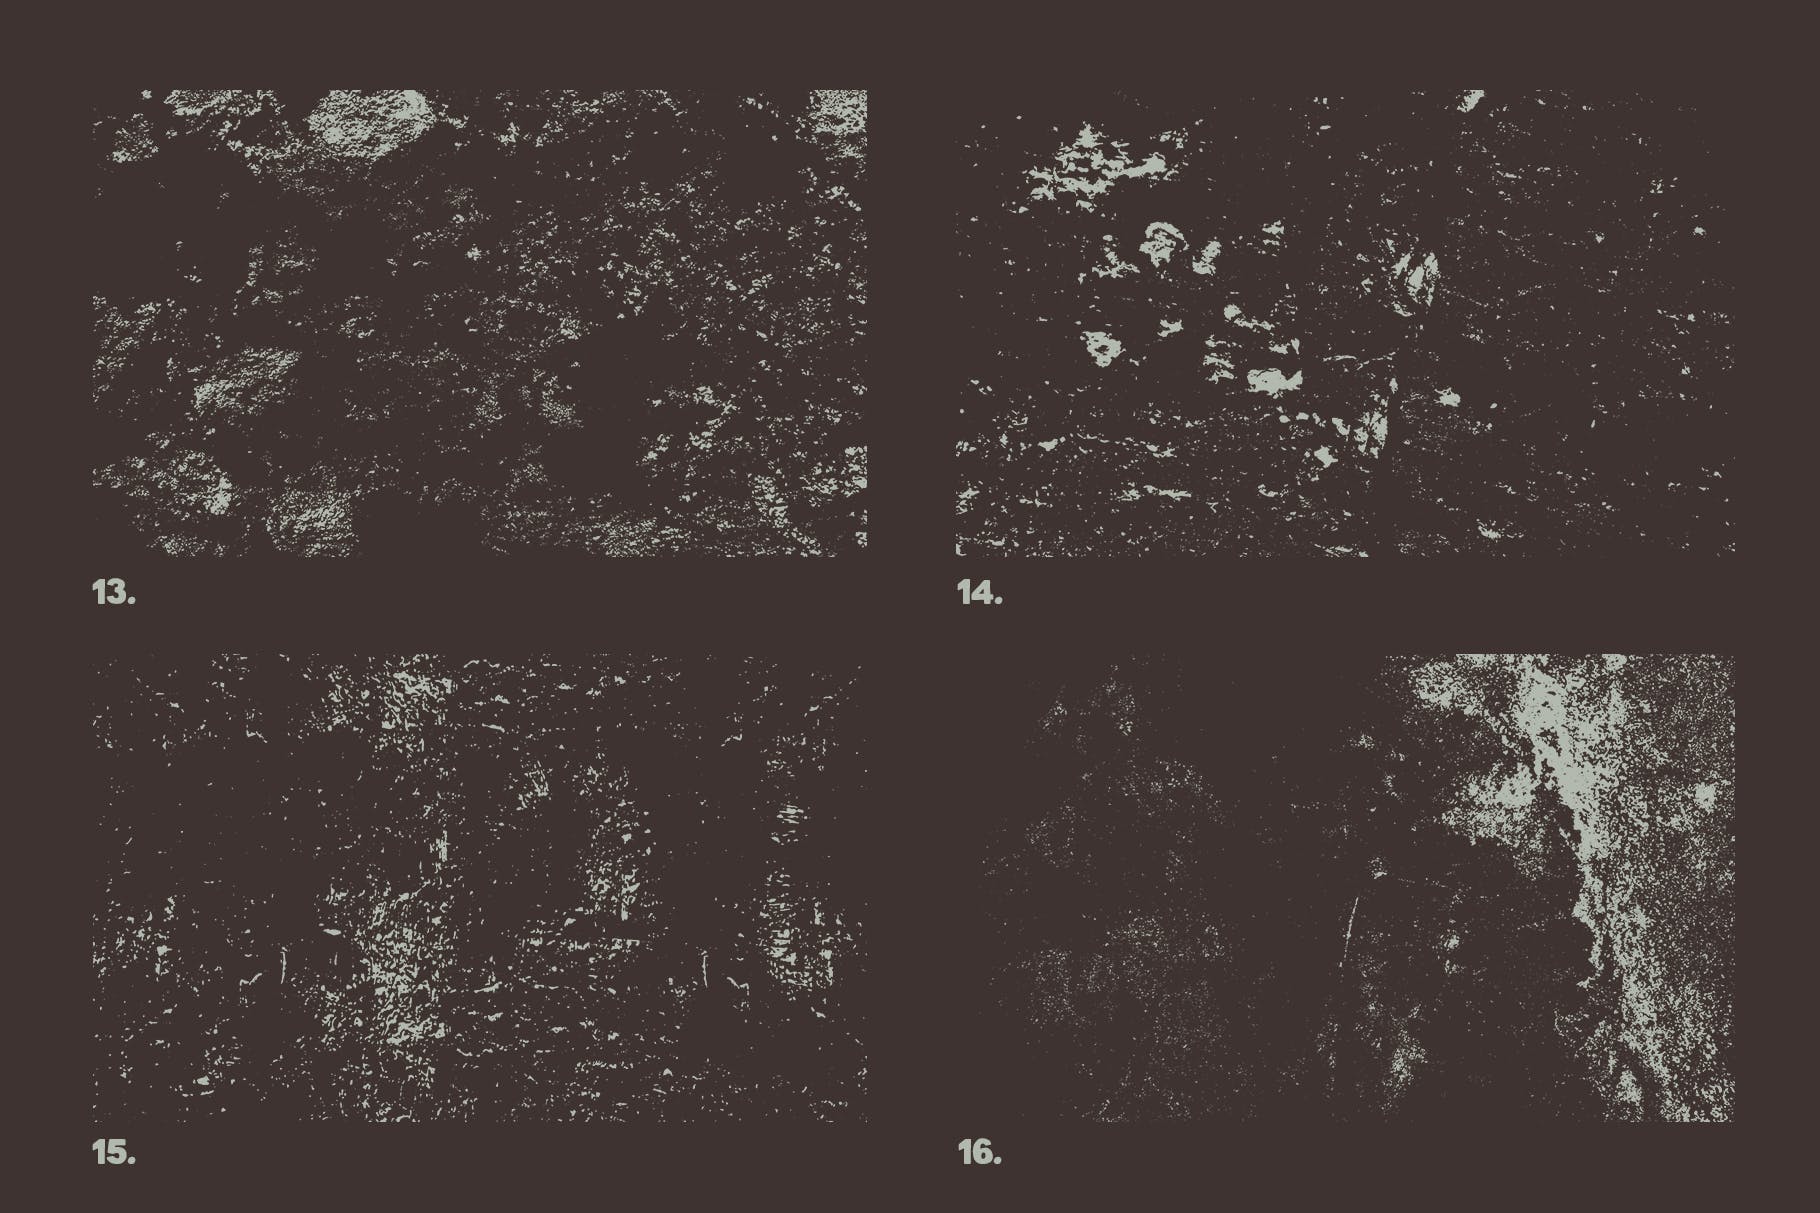 12个污迹斑迹做旧处理矢量纹理背景素材 Vector Grunge Textures x12 Vol2插图3